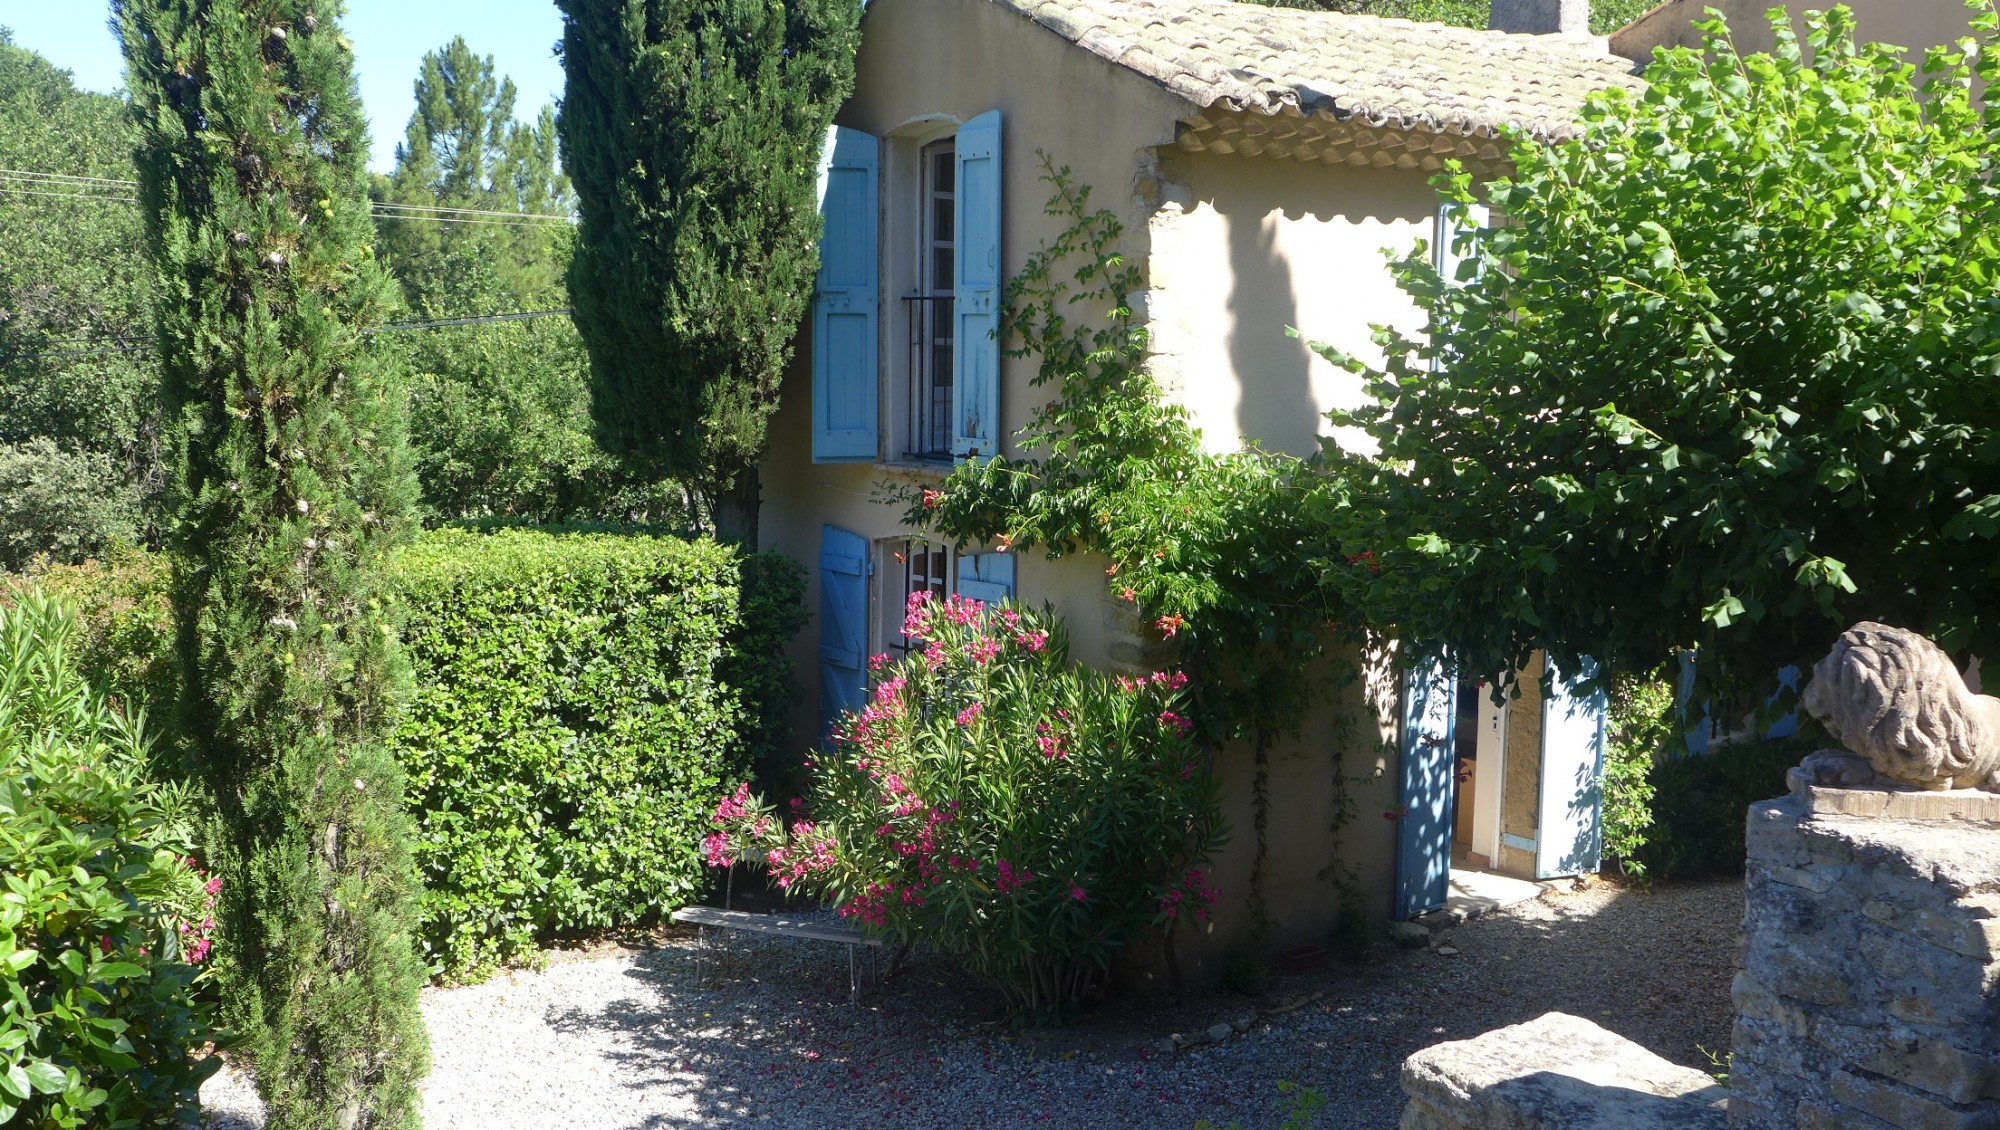 Location de vacances en Drôme Provençale